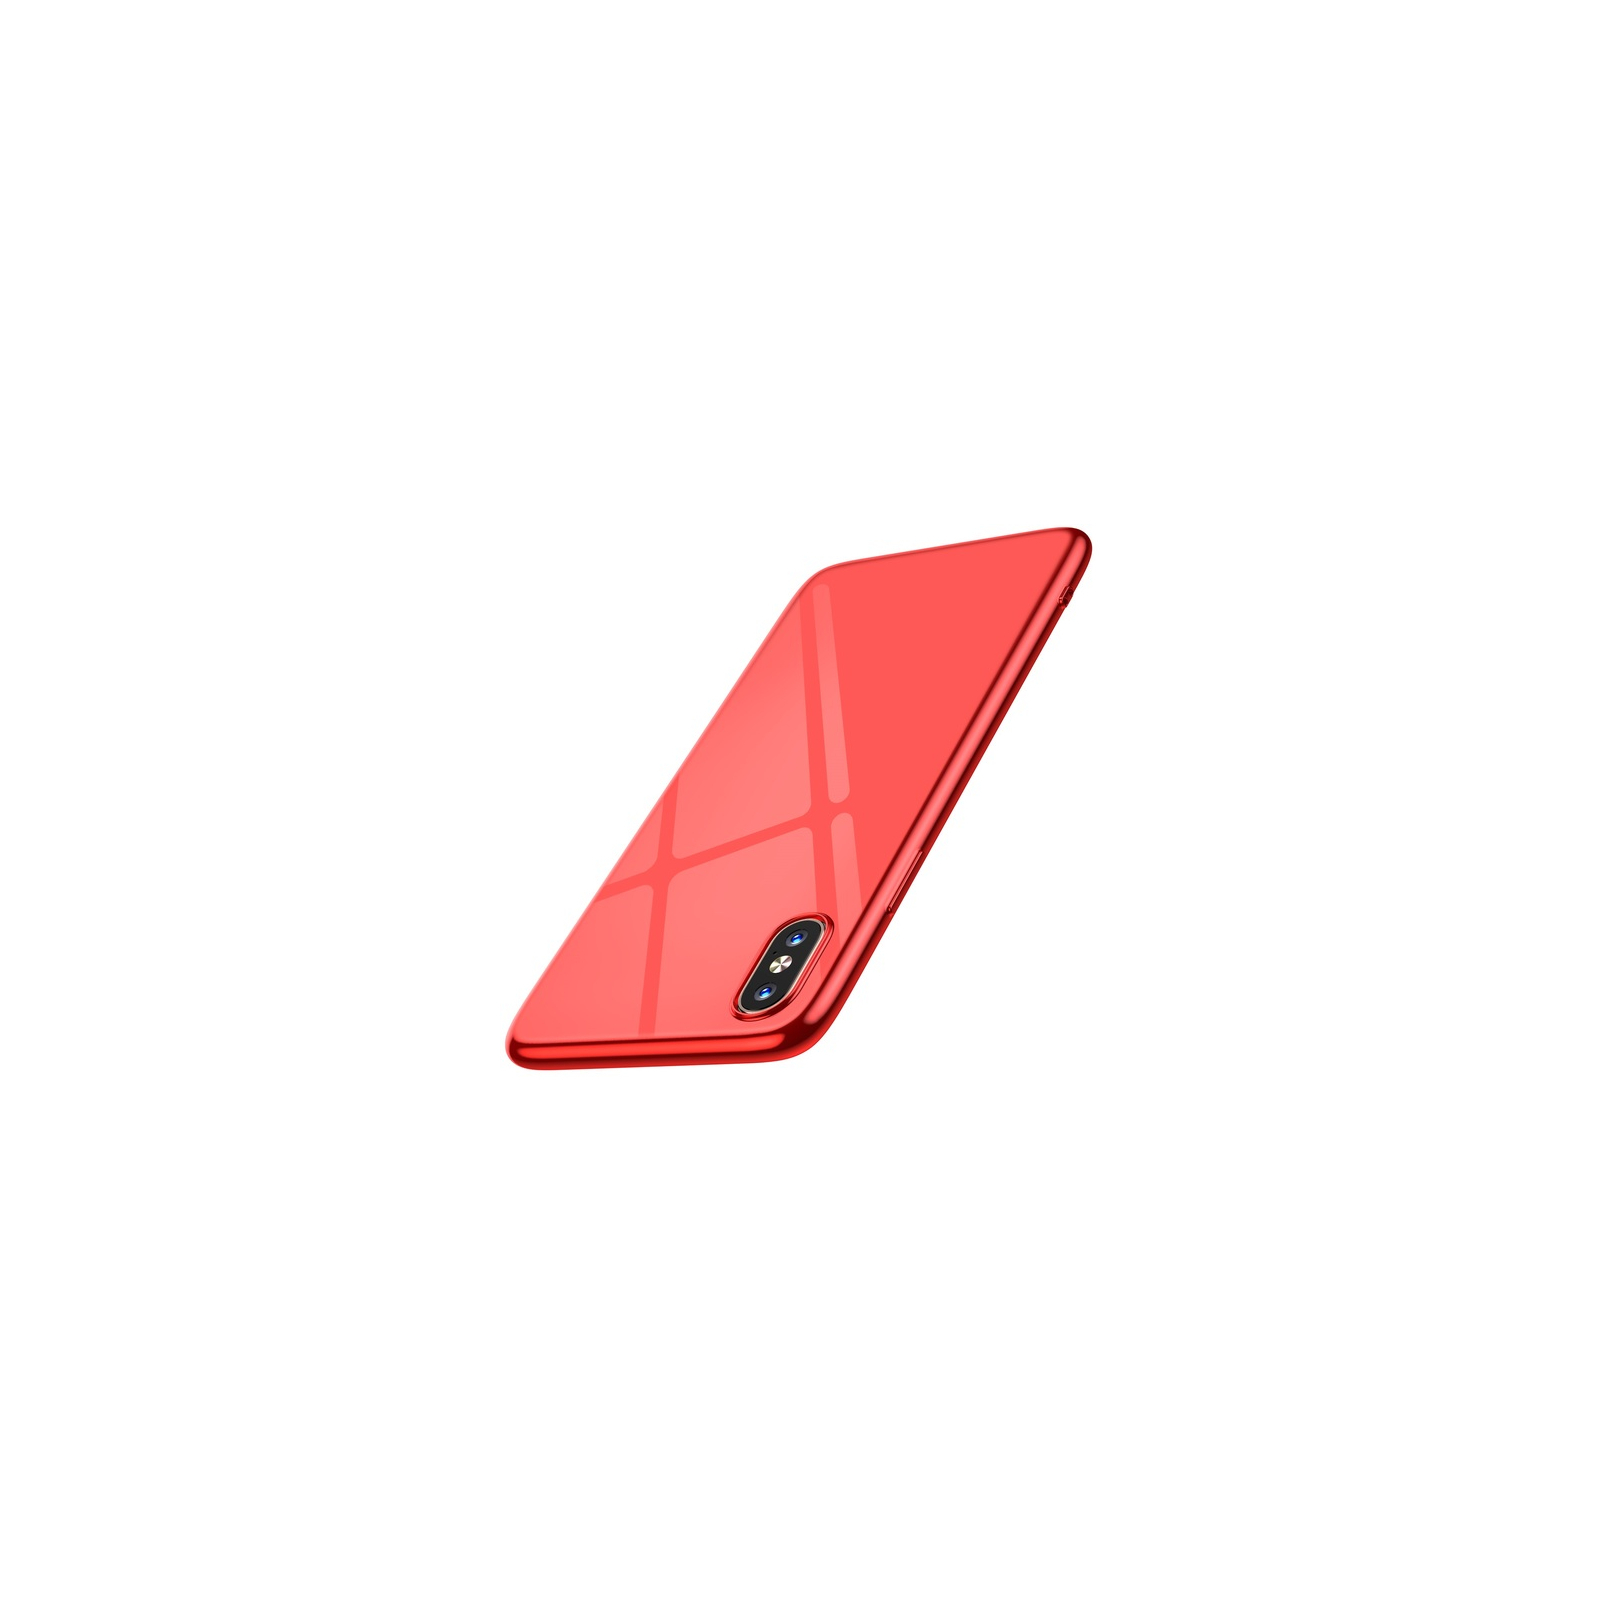 Чехол для мобильного телефона T-Phox iPhone Xs Max 6.5 - Crystal (Red) (6970225138120) изображение 3